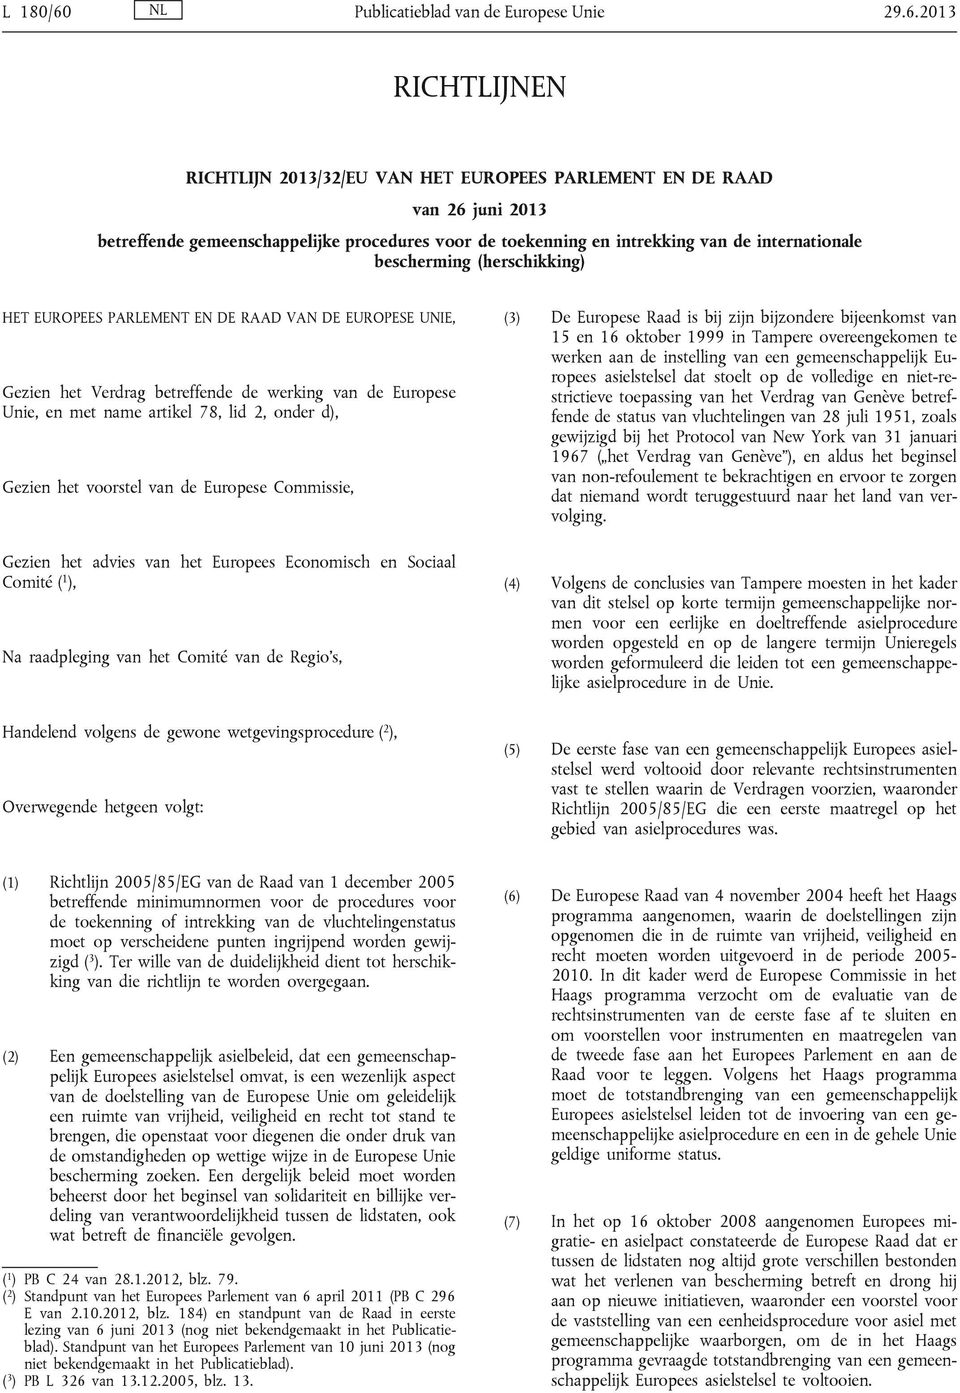 2013 RICHTLIJNEN RICHTLIJN 2013/32/EU VAN HET EUROPEES PARLEMENT EN DE RAAD van 26 juni 2013 betreffende gemeenschappelijke procedures voor de toekenning en intrekking van de internationale